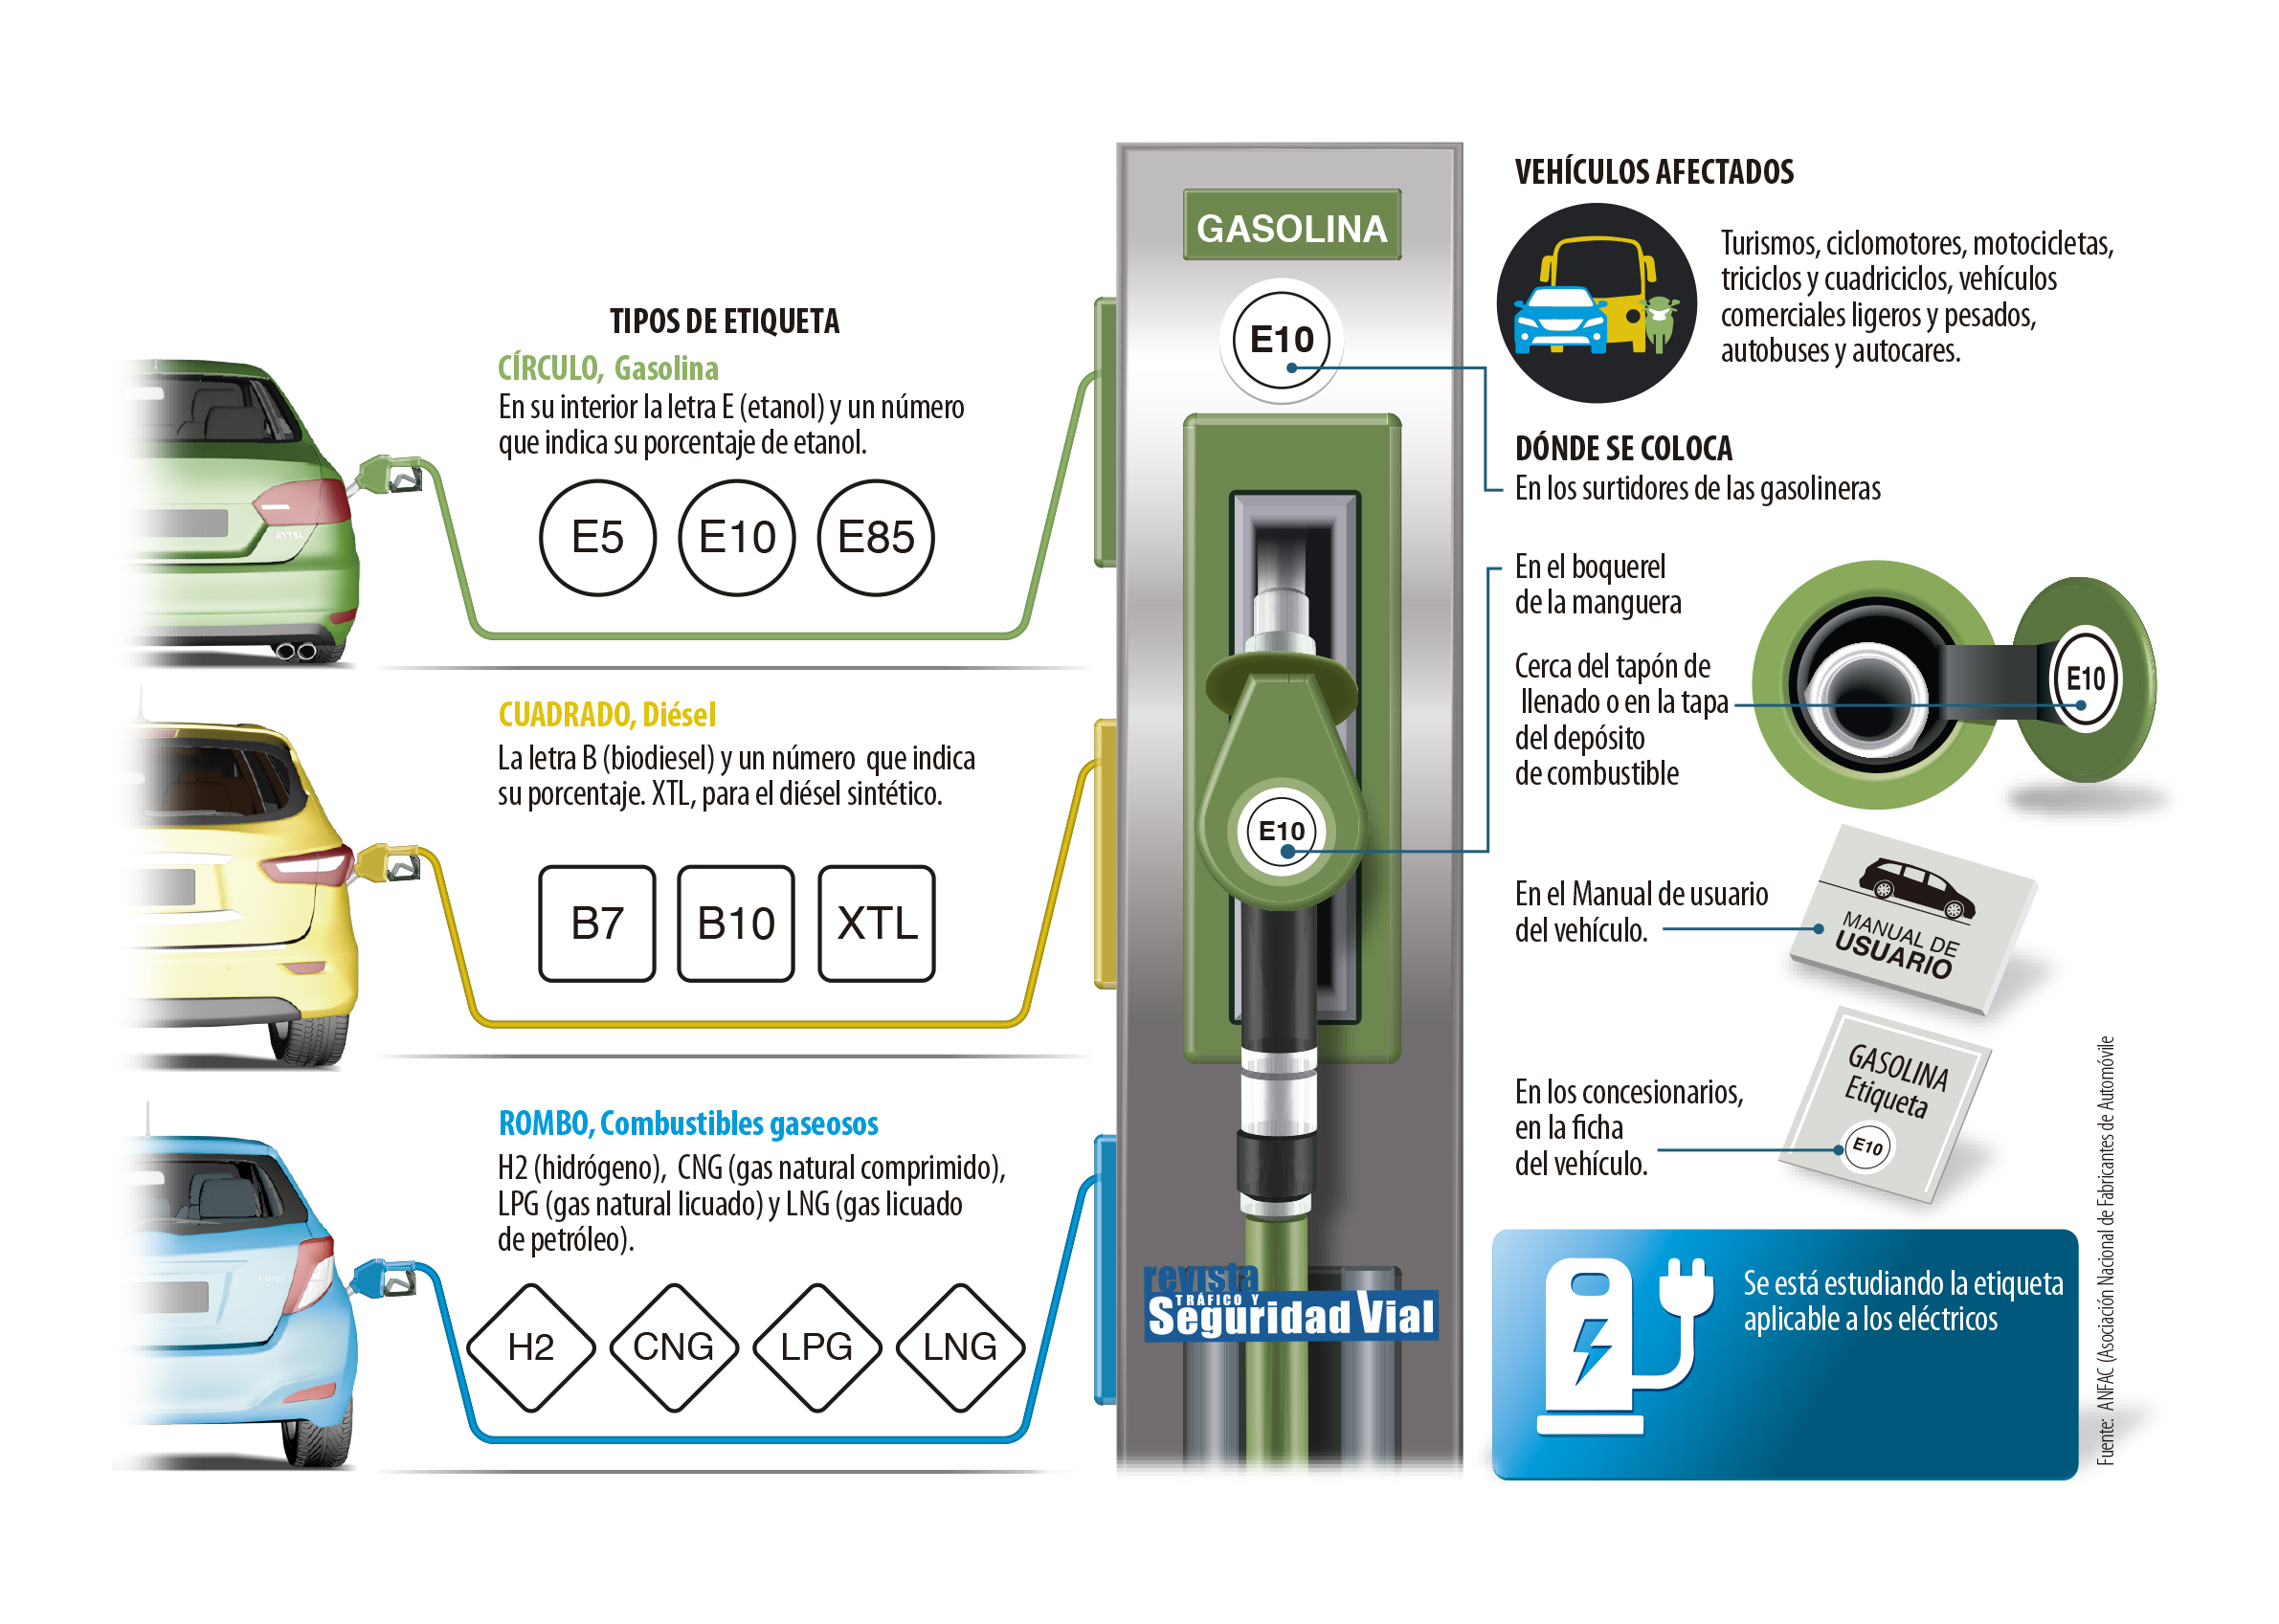 Infografia DGT sobre Etiquetas combustibles.jpg